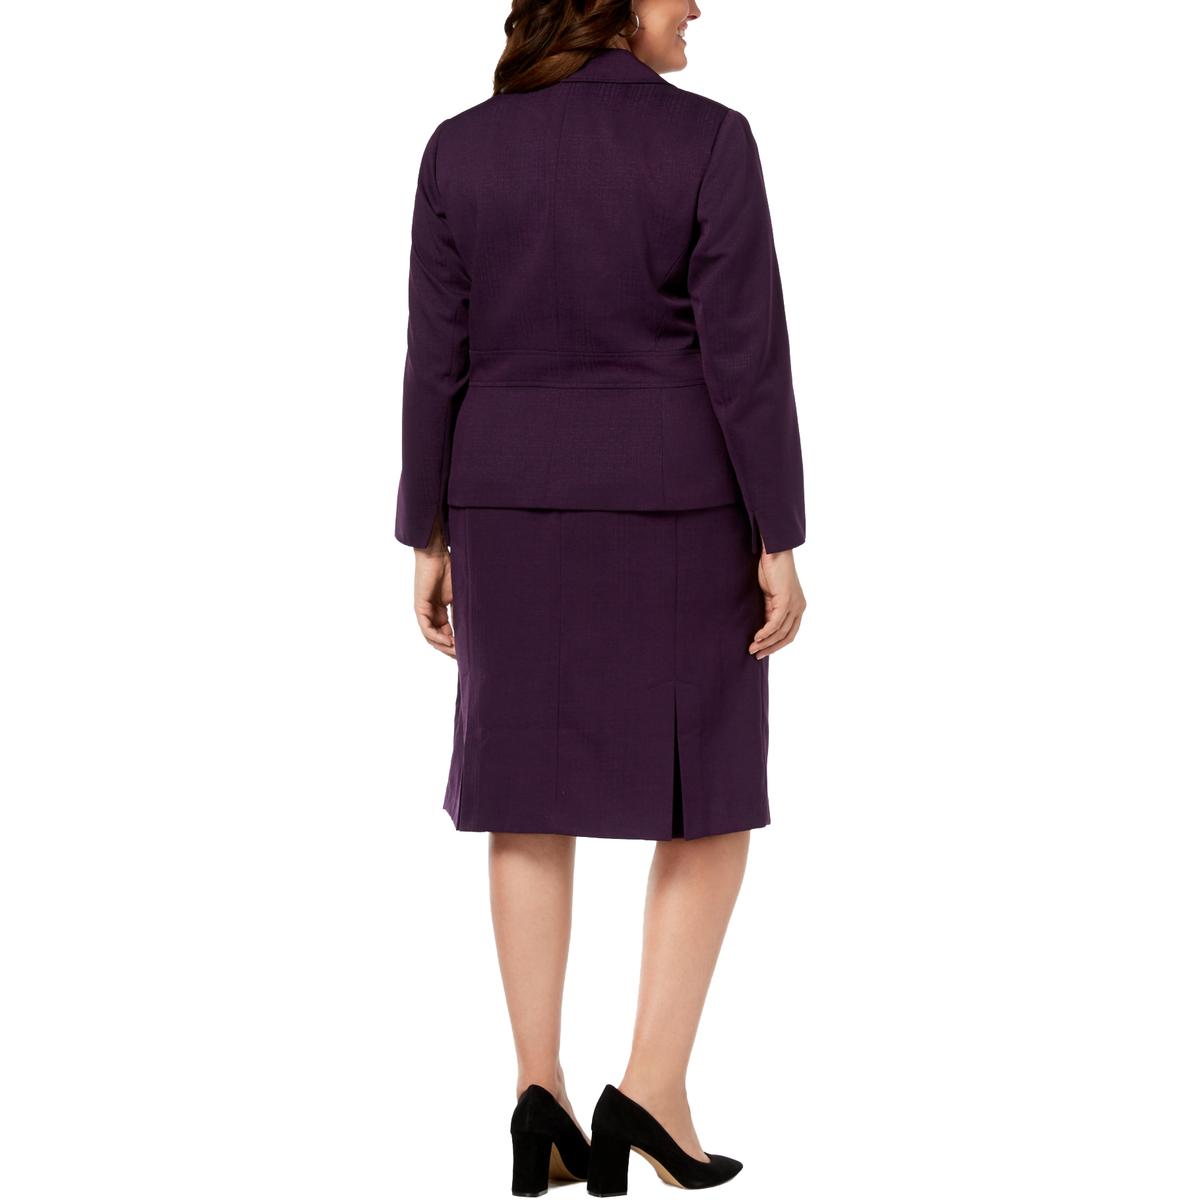 Le Suit Womens Purple Professional Crepe Textured Skirt Suit Plus 24w Bhfo 4834 Ebay